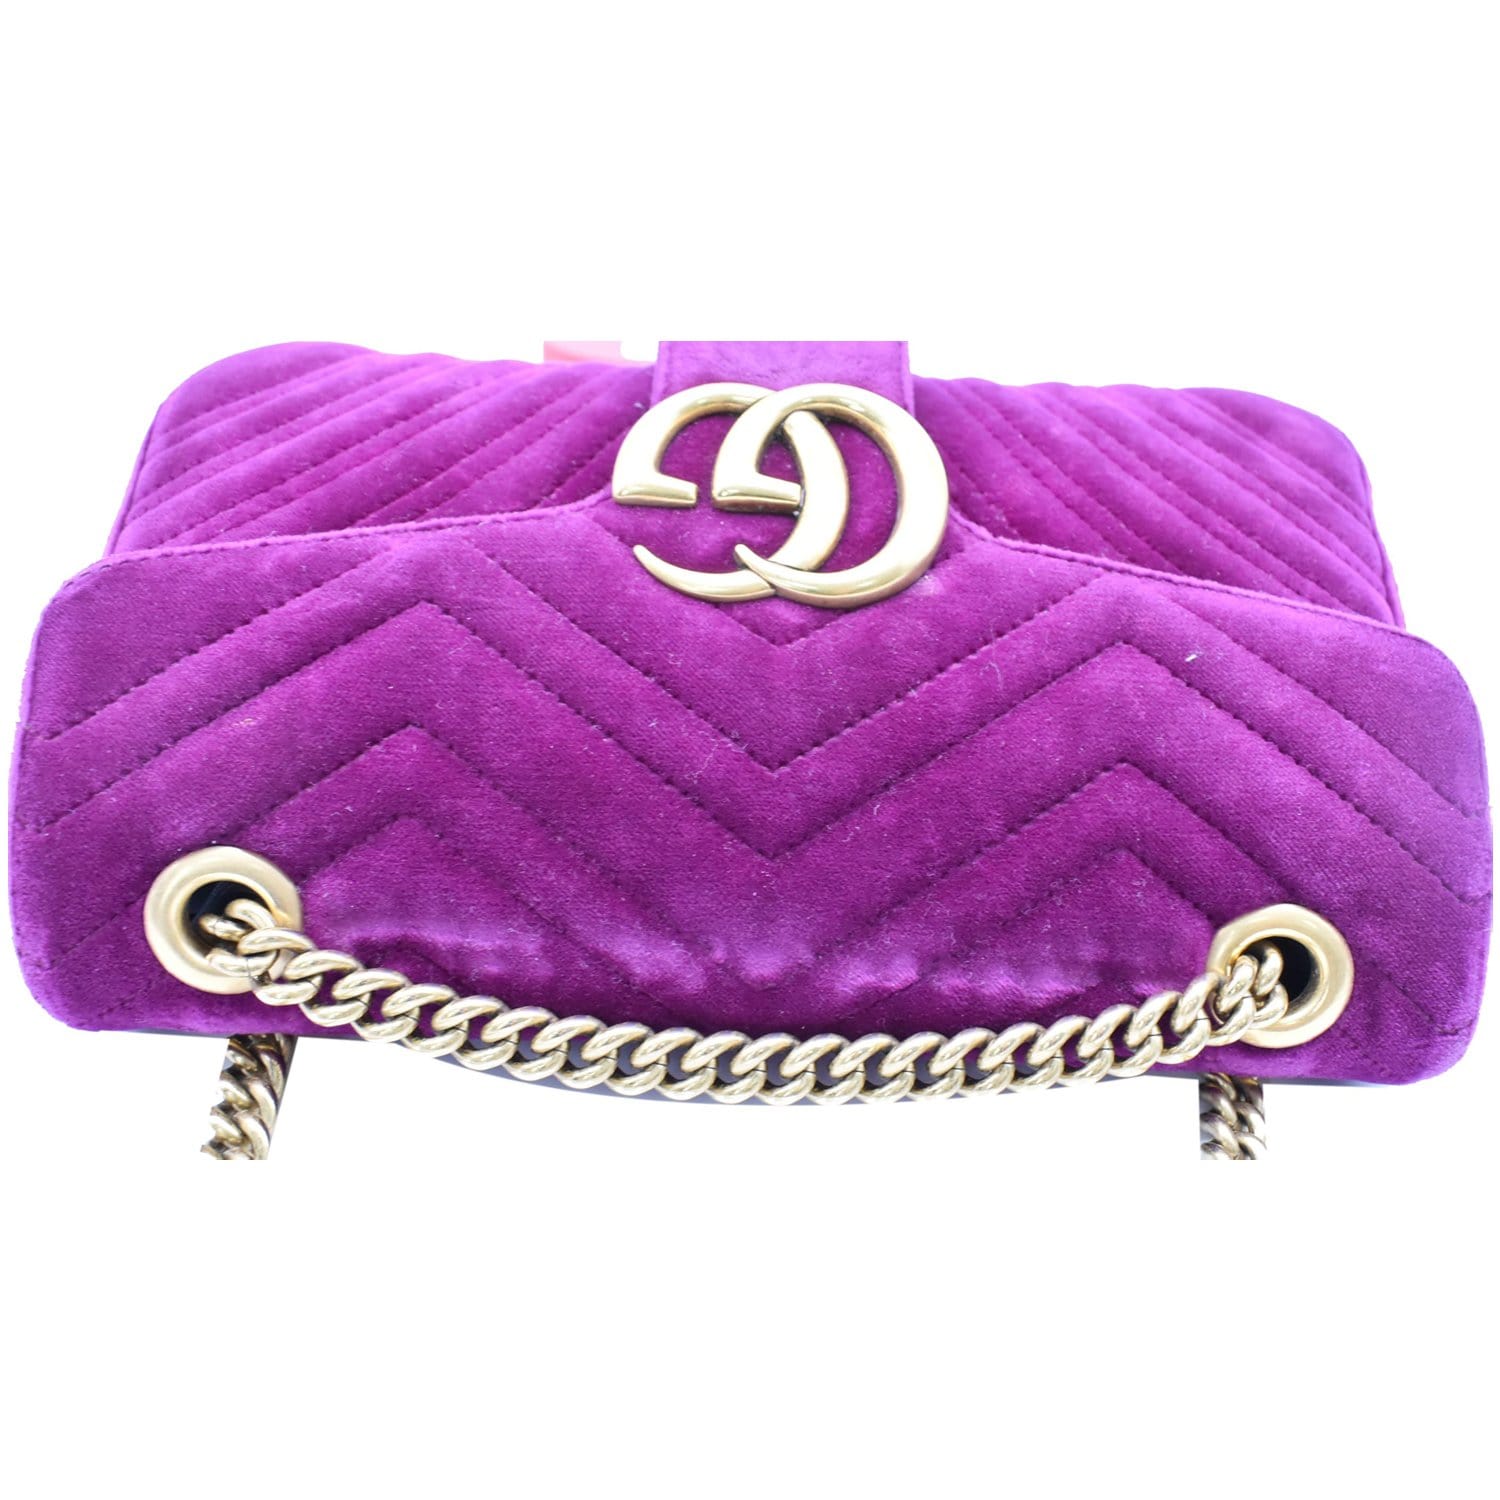 Gucci Purple Velvet GG Marmont Bag CLICK  #gucci  #GUCCI会長 #guccipurse #guccihandbag #handbag #handb…